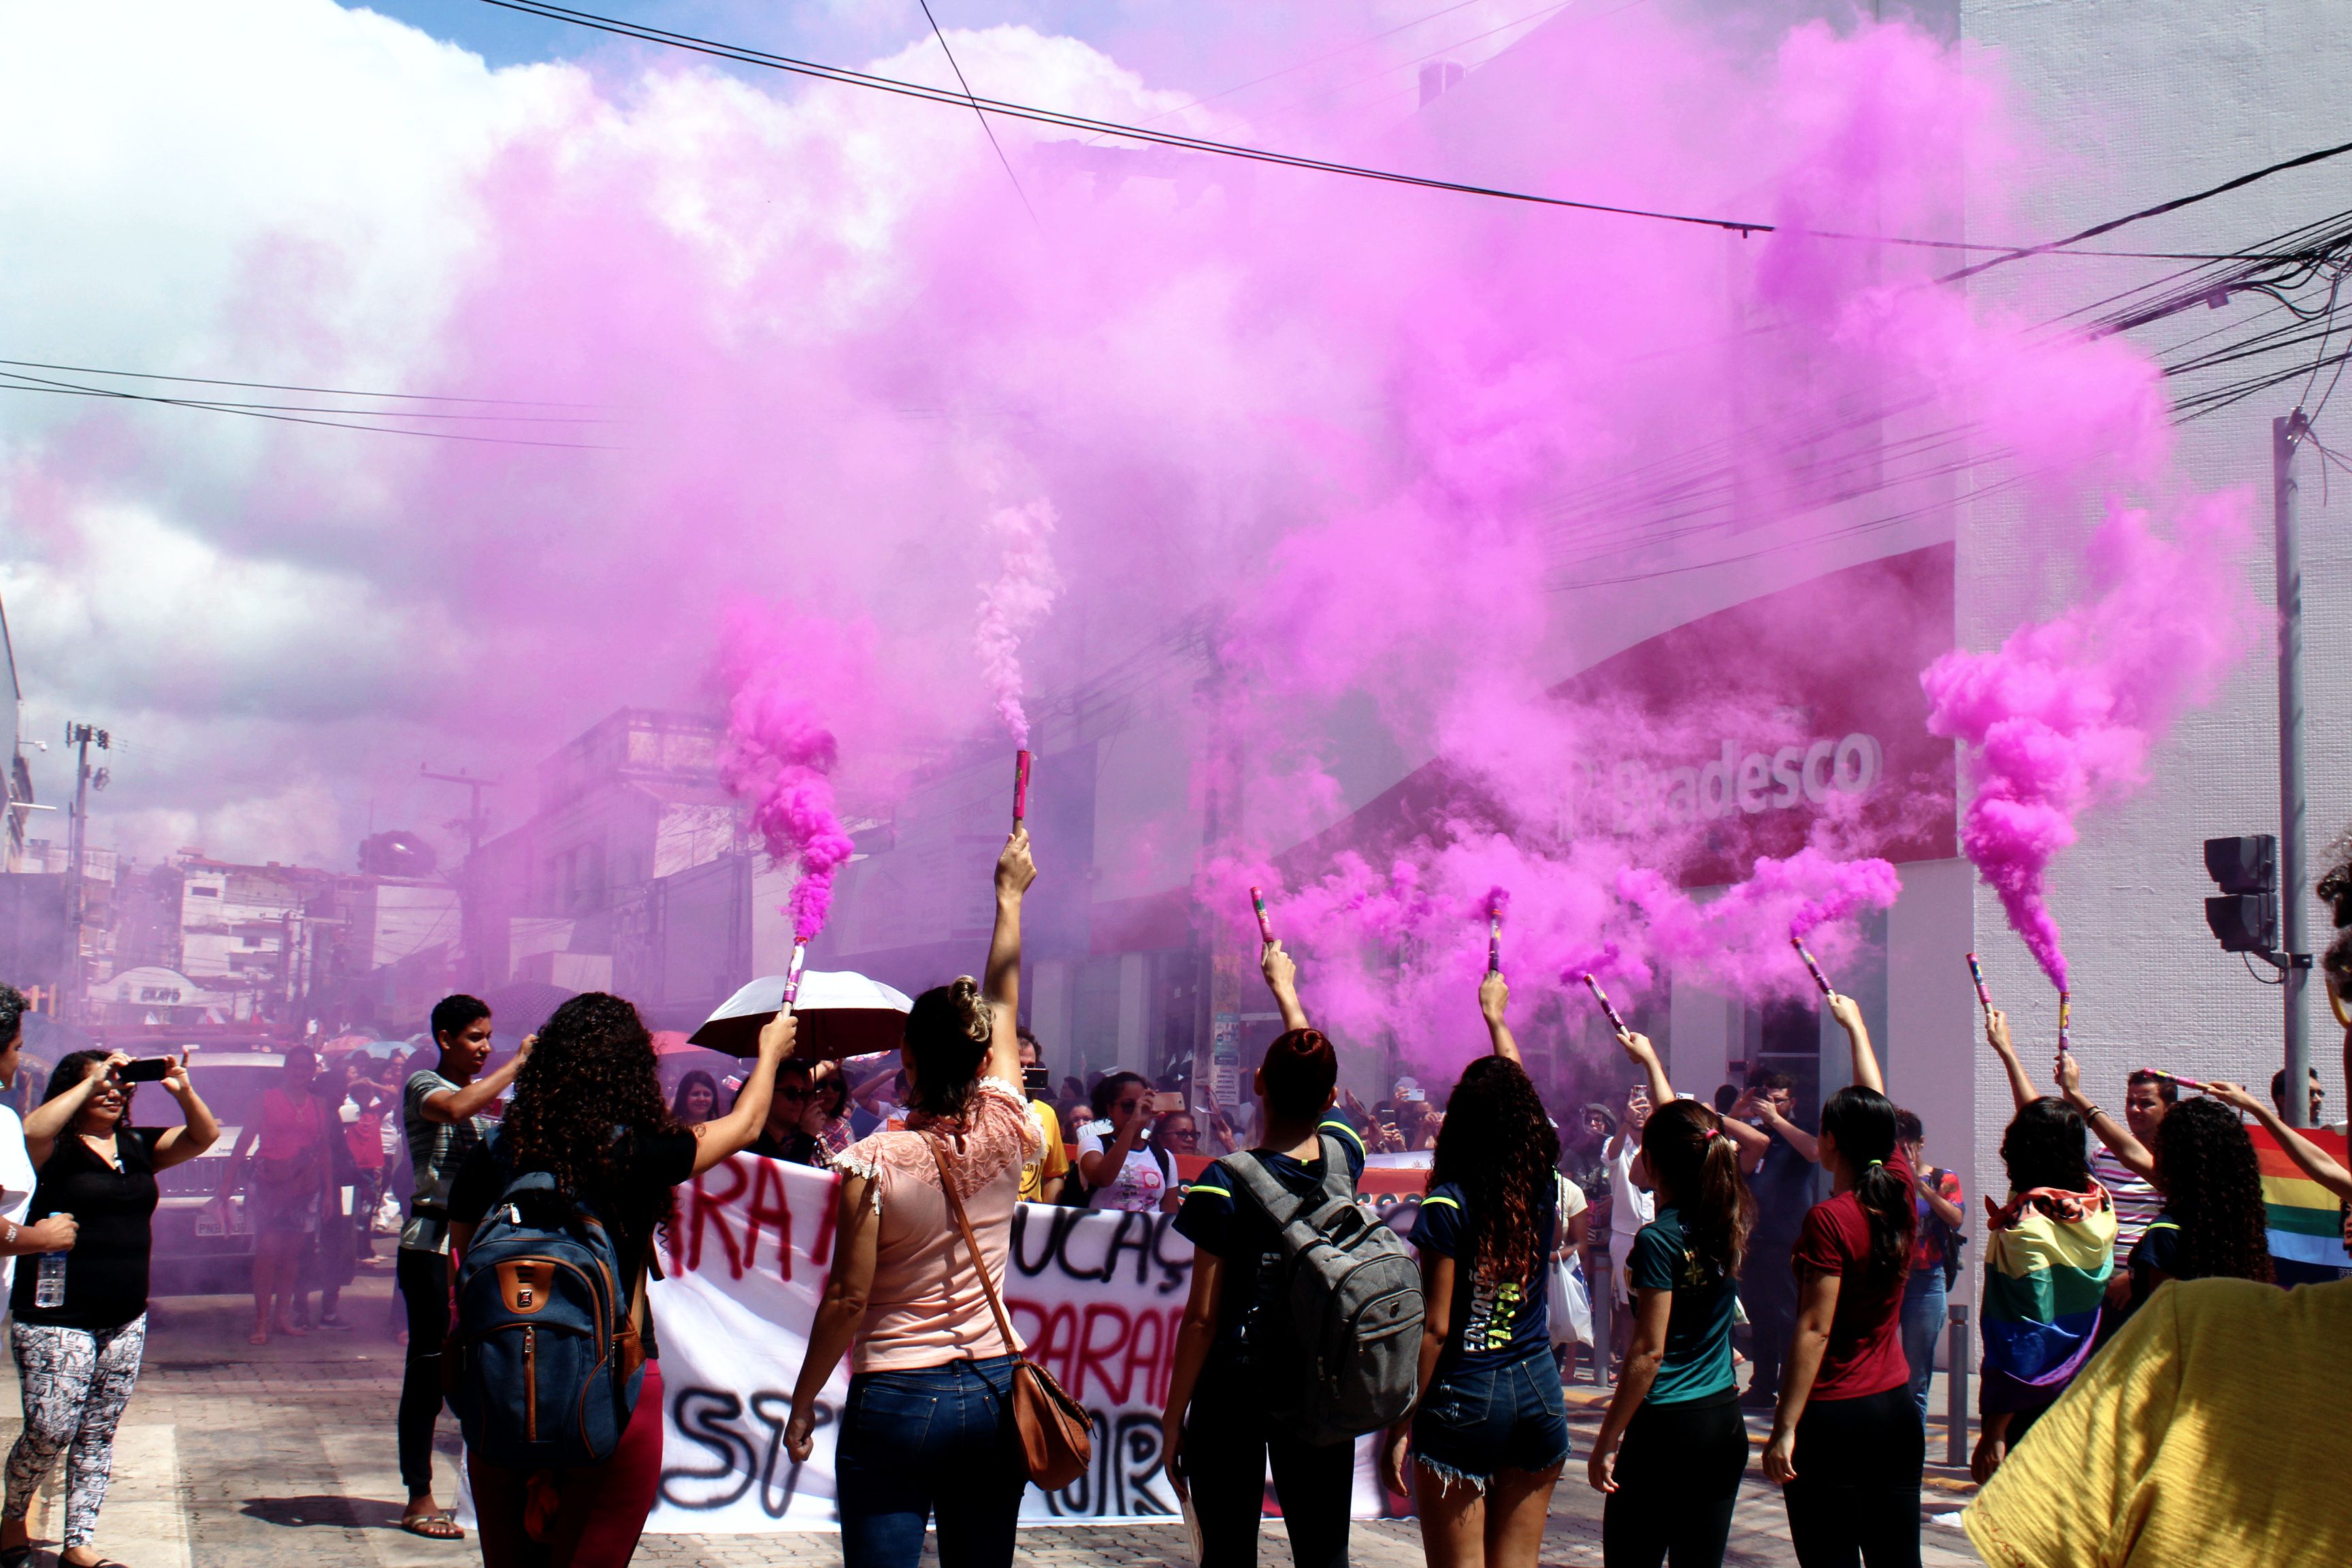 Mulheres soltam fumaça roxa em alusão a luta feminista, Marcha das mulheres 2020, Crato Ceará. Crédito: Arquivo/bárbaras.